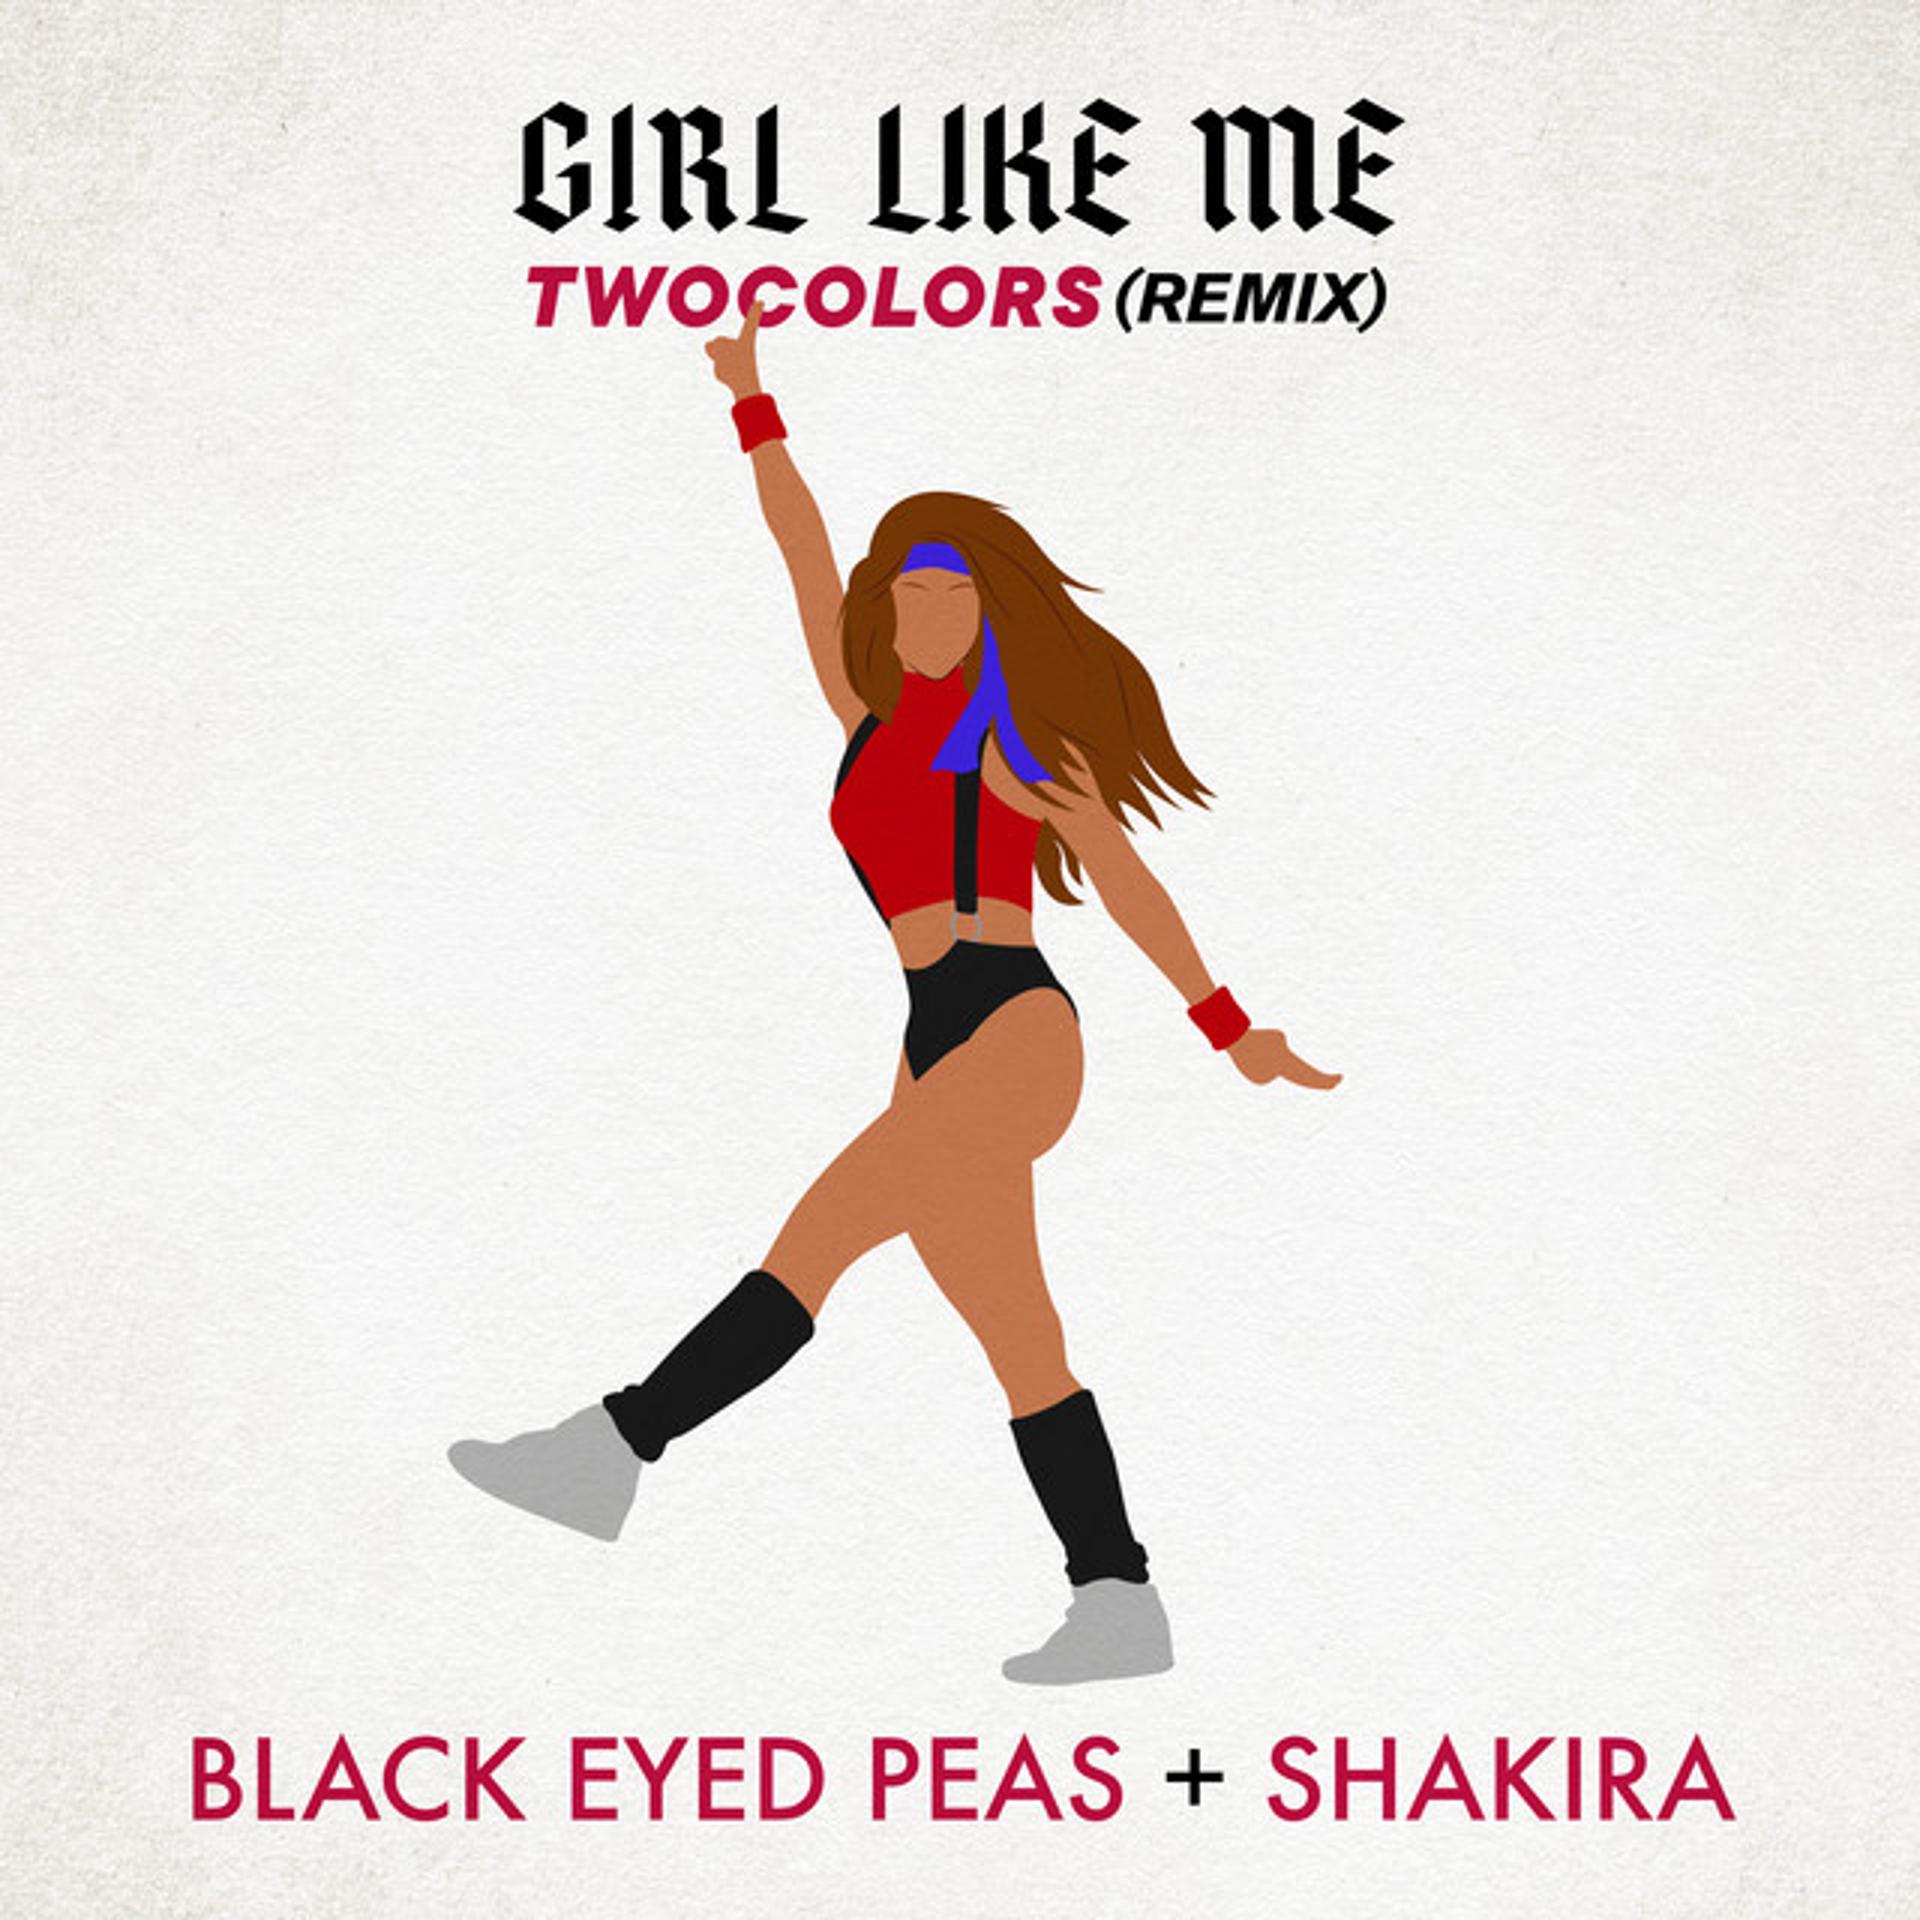 Me extension. Black eyed Peas, Shakira - girl like me. Black eyed Peas, Shakira & TWOCOLORS. Black eyed Peas girl.